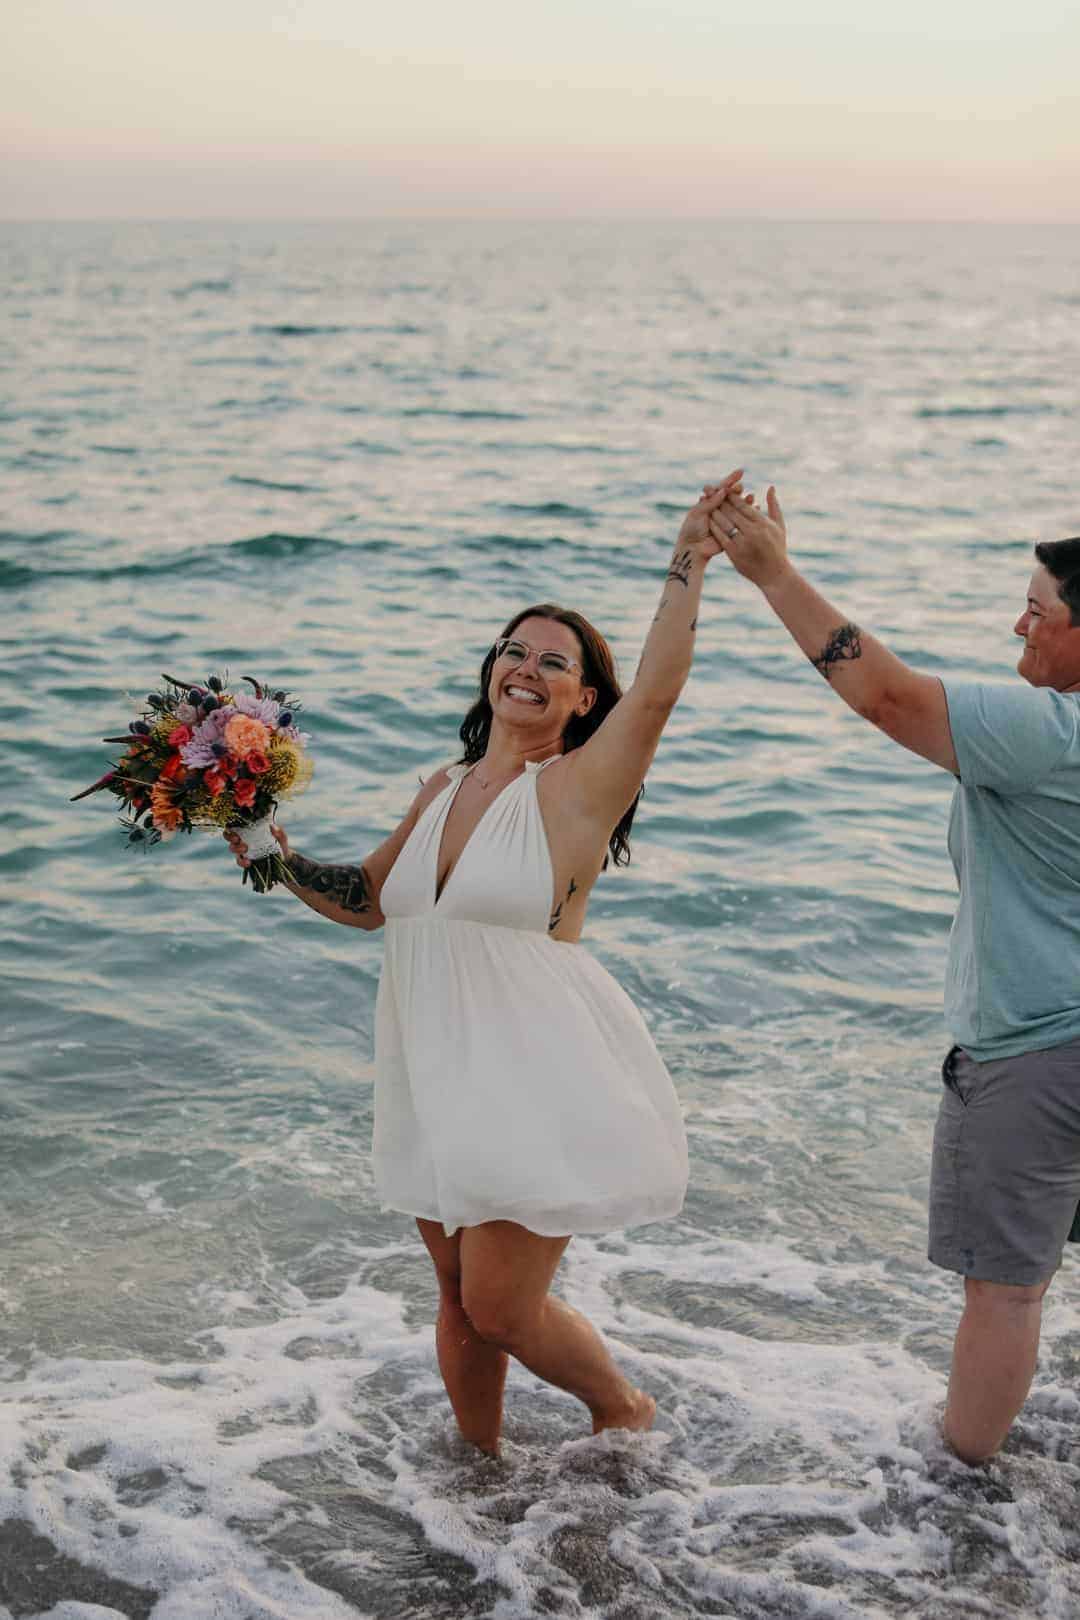 SURPRISE SAME SEX BEACH PROPOSAL Bespoke-Bride Wedding Blog image pic pic